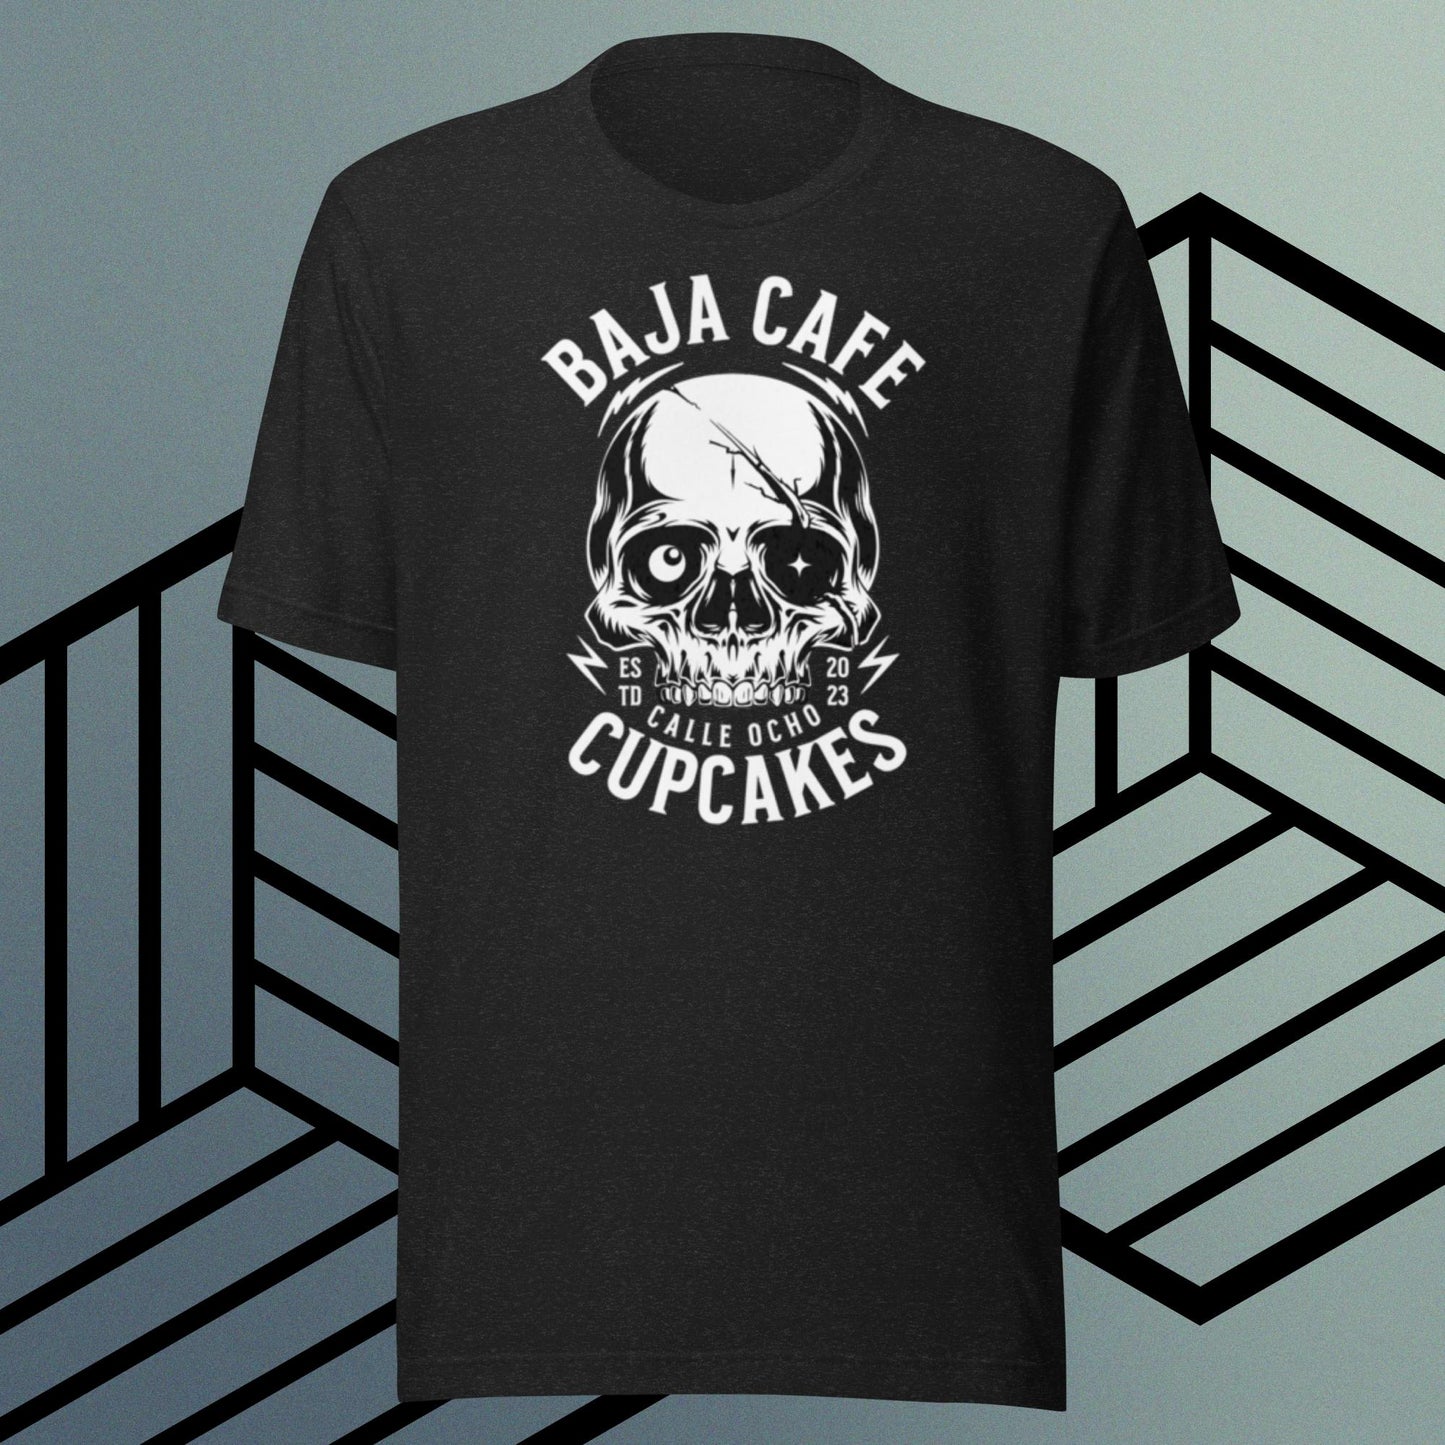 Baja Cafe cupcakes T